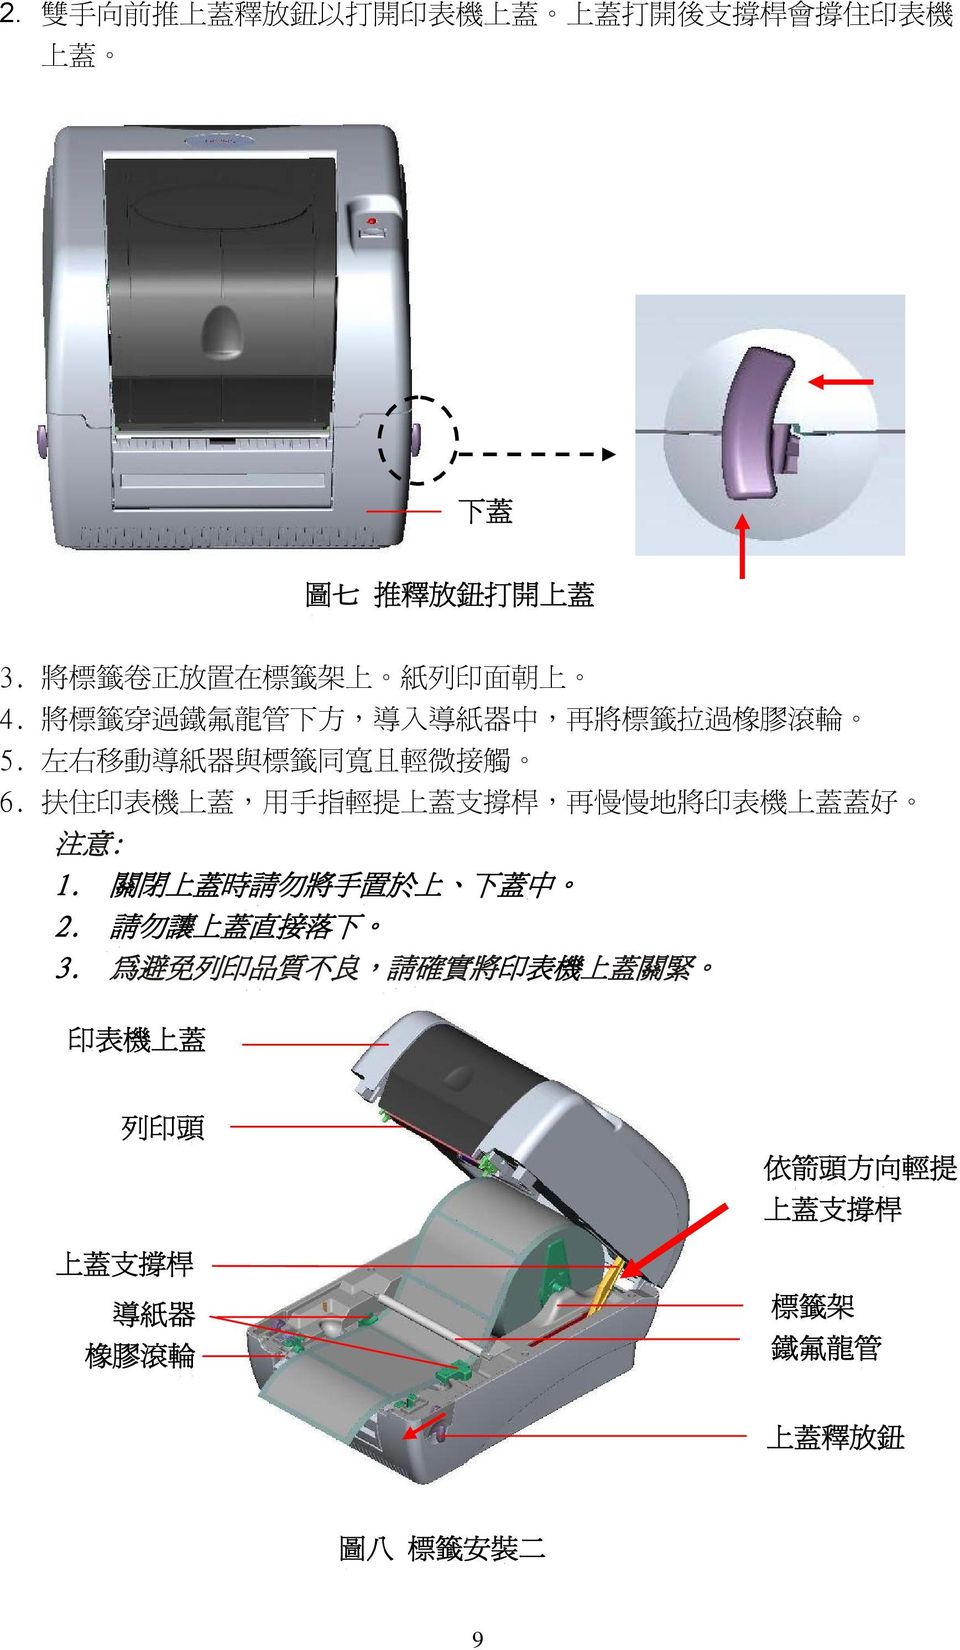 左 右 移 動 導 紙 器 與 標 籤 同 寬 且 輕 微 接 觸 6. 扶 住 印 表 機 上 蓋, 用 手 指 輕 提 上 蓋 支 撐 桿, 再 慢 慢 地 將 印 表 機 上 蓋 蓋 好 注 意 : 1.